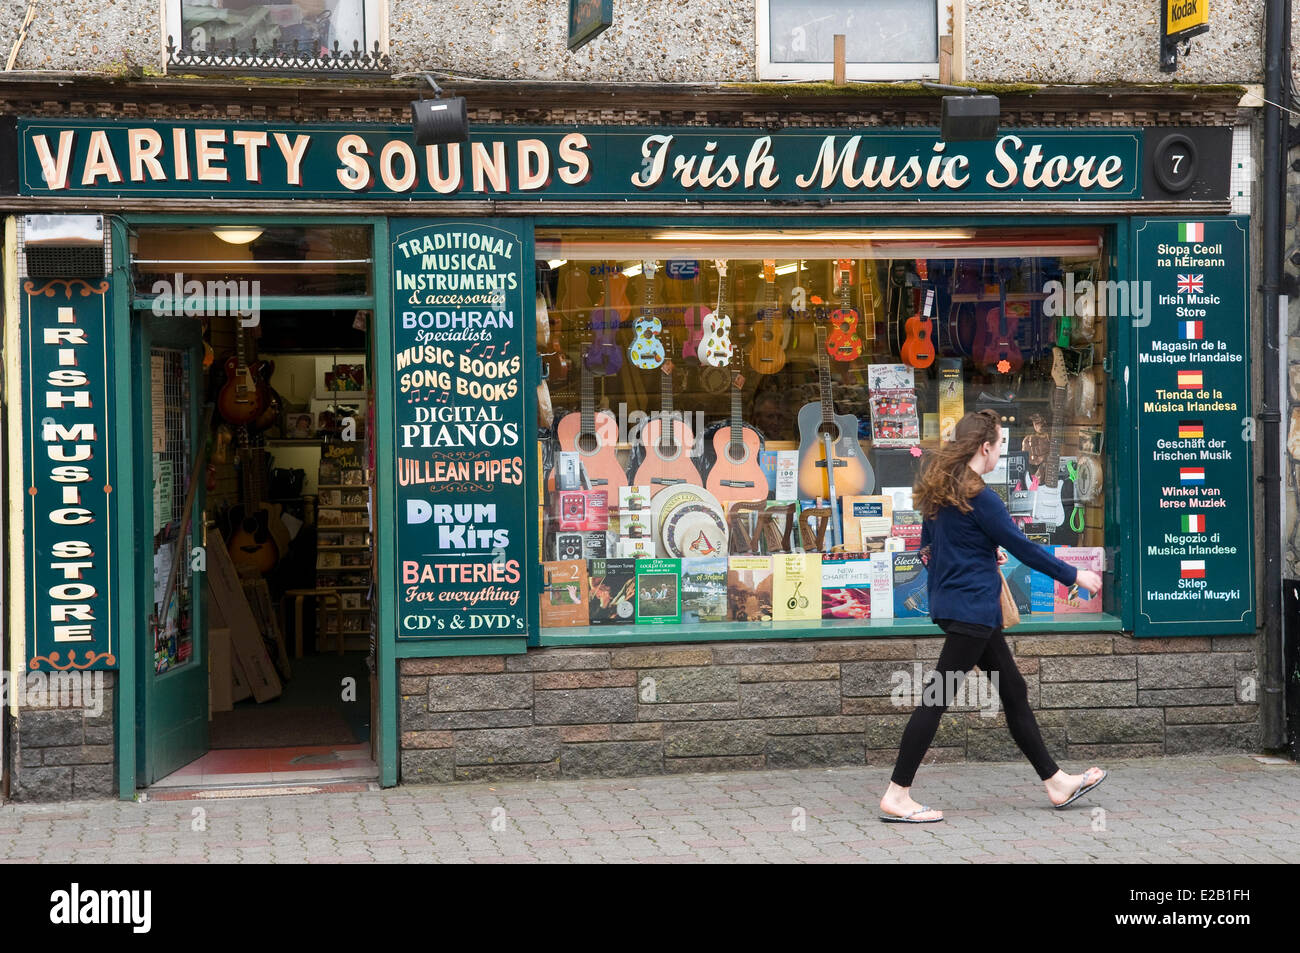 Ireland, County Kerry, Killarney, music store Stock Photo